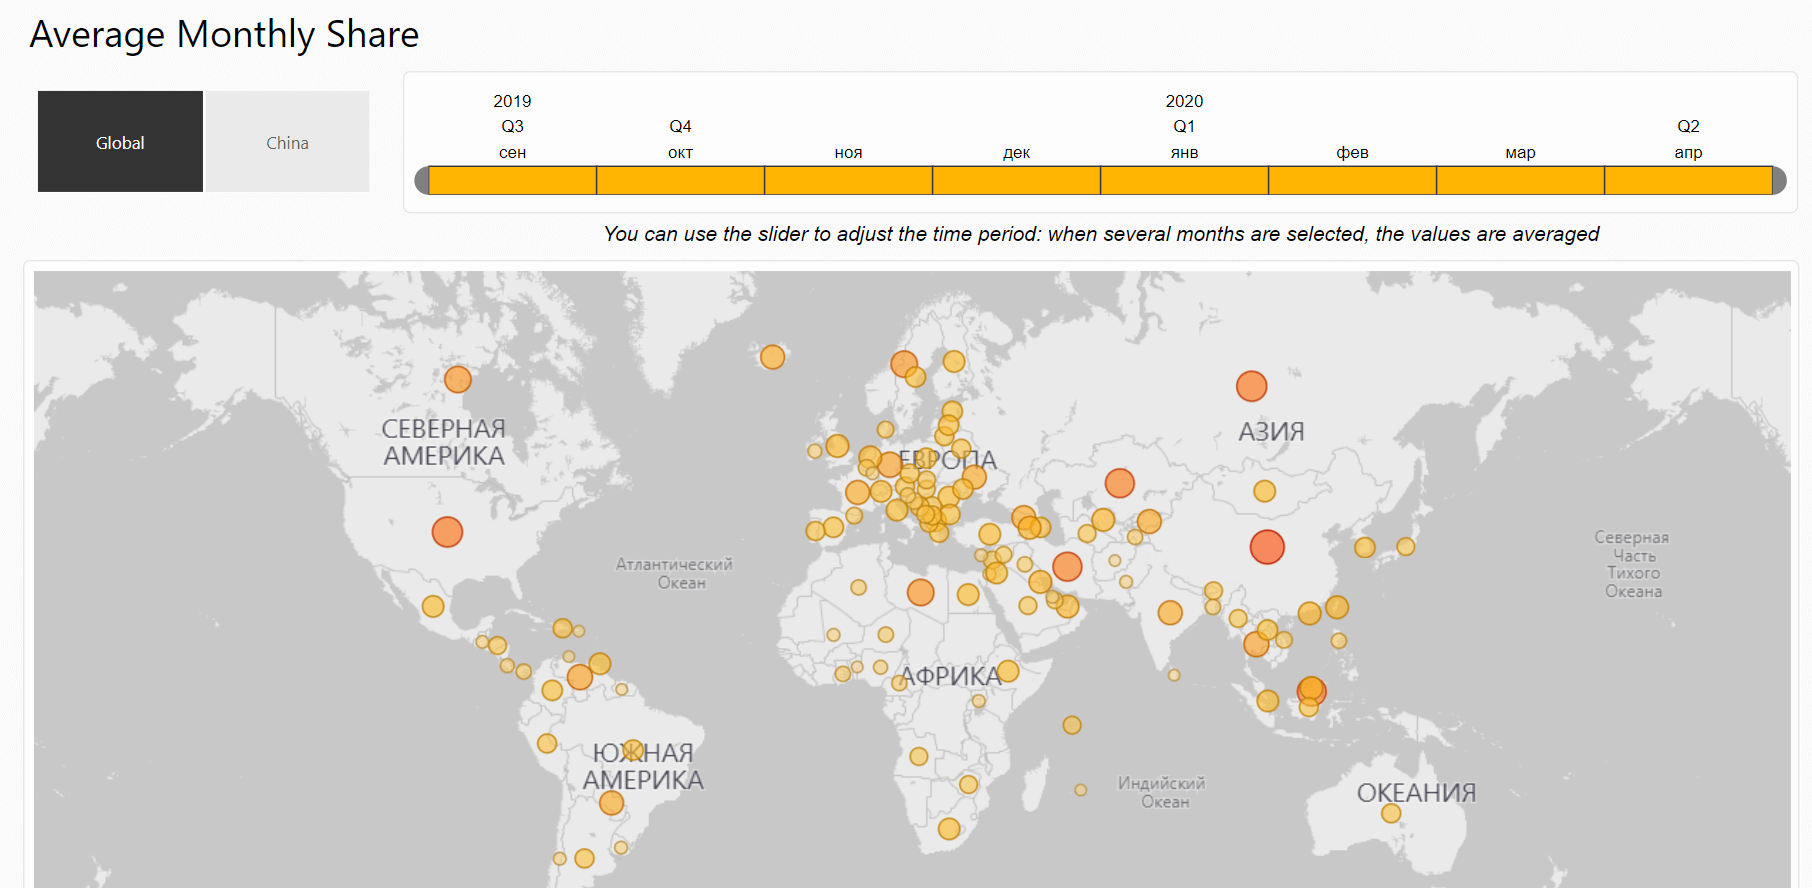 Почему Китай может потерять лидерство в майнинге Биткоина в будущем? Распределение майнеров Биткоина на карте мира. Фото.